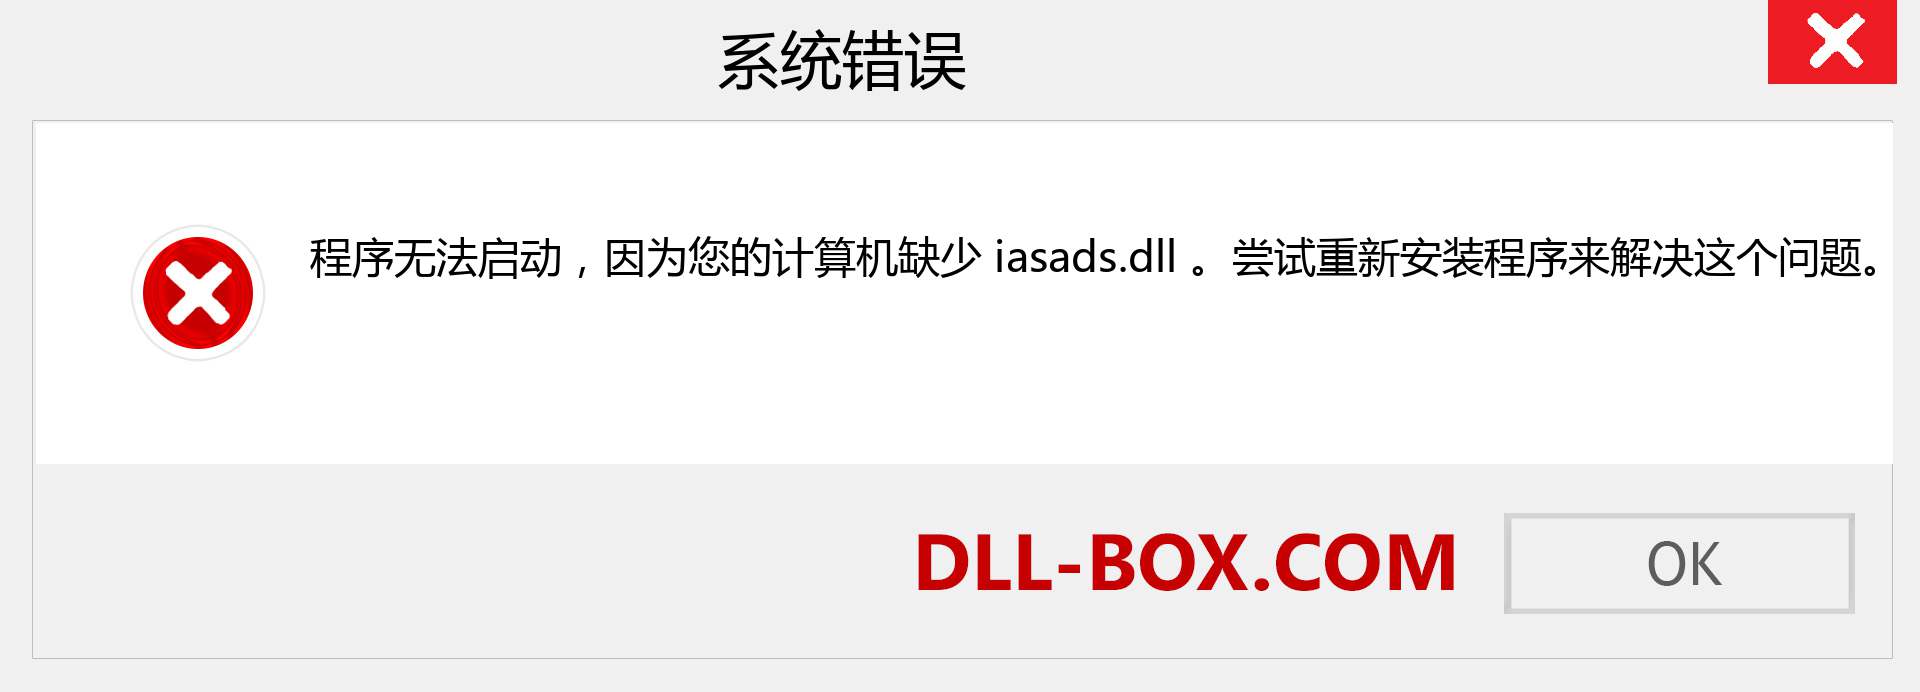 iasads.dll 文件丢失？。 适用于 Windows 7、8、10 的下载 - 修复 Windows、照片、图像上的 iasads dll 丢失错误